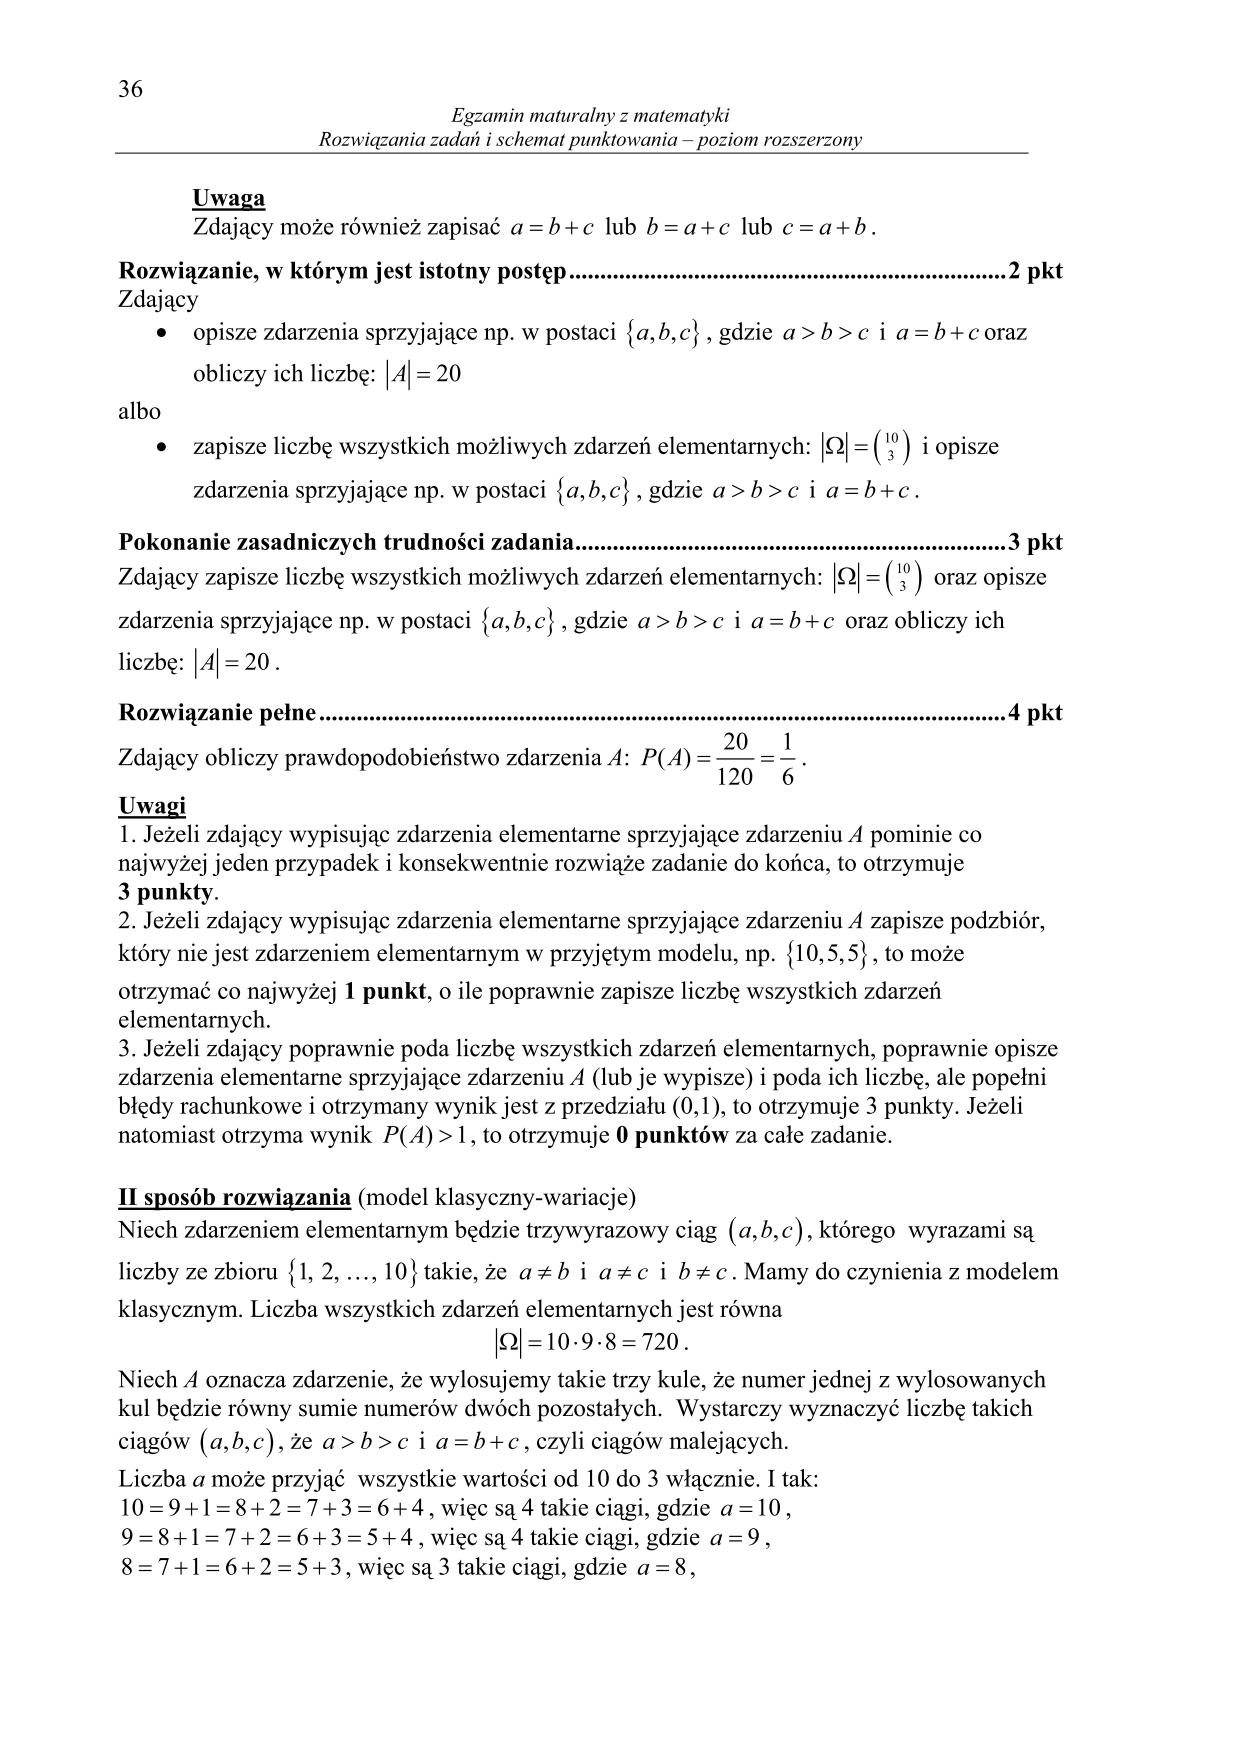 odpowiedzi-matematyka-poziom-rozszerzony-matura-2014-36